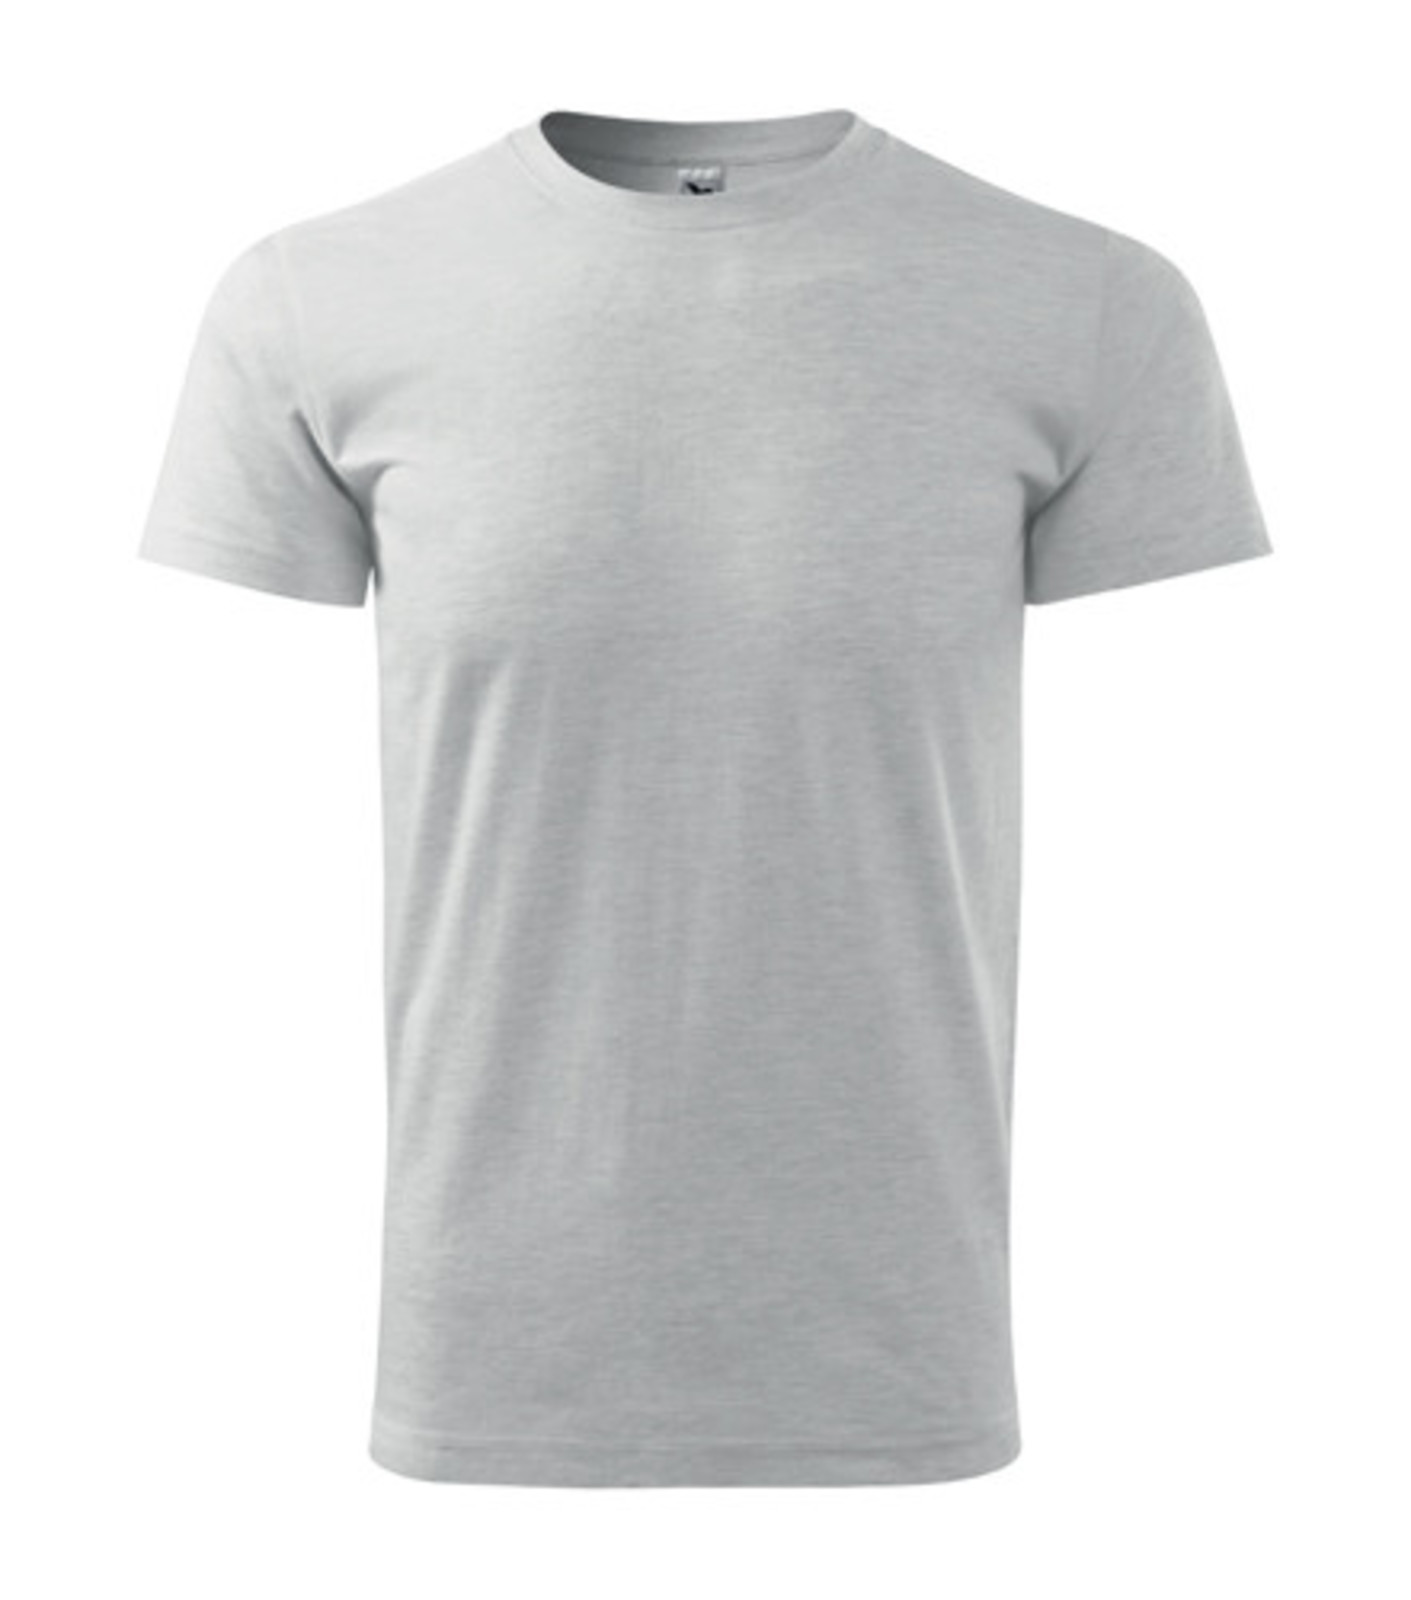 Unisex tričko Malfini Heavy New 137 - veľkosť: 3XL, farba: svetlosivý melír